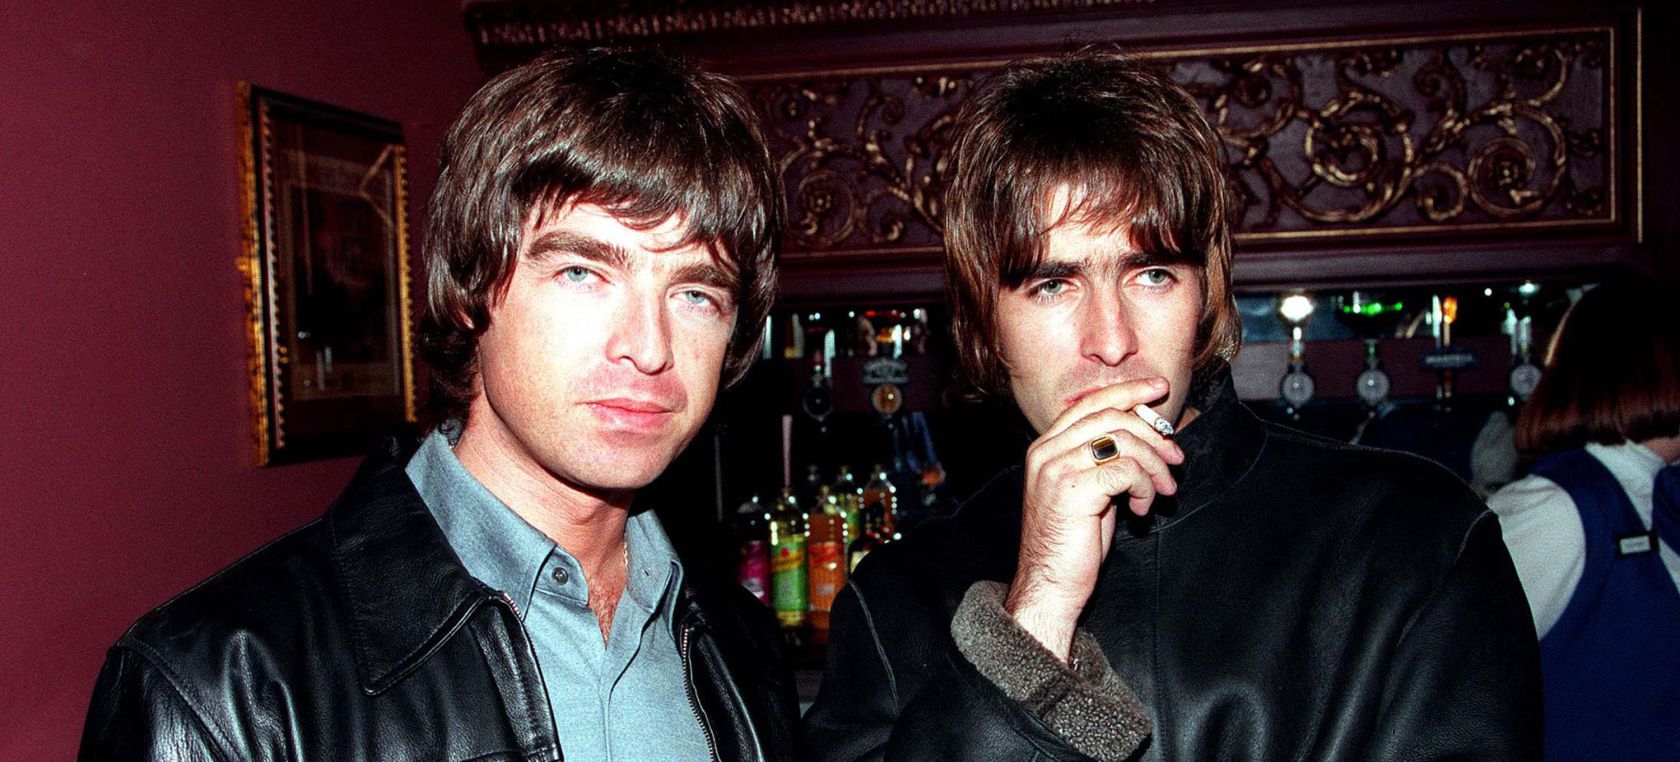 La historia real que inspiró 'Don't Look Back In Anger' de Oasis hace 27 años